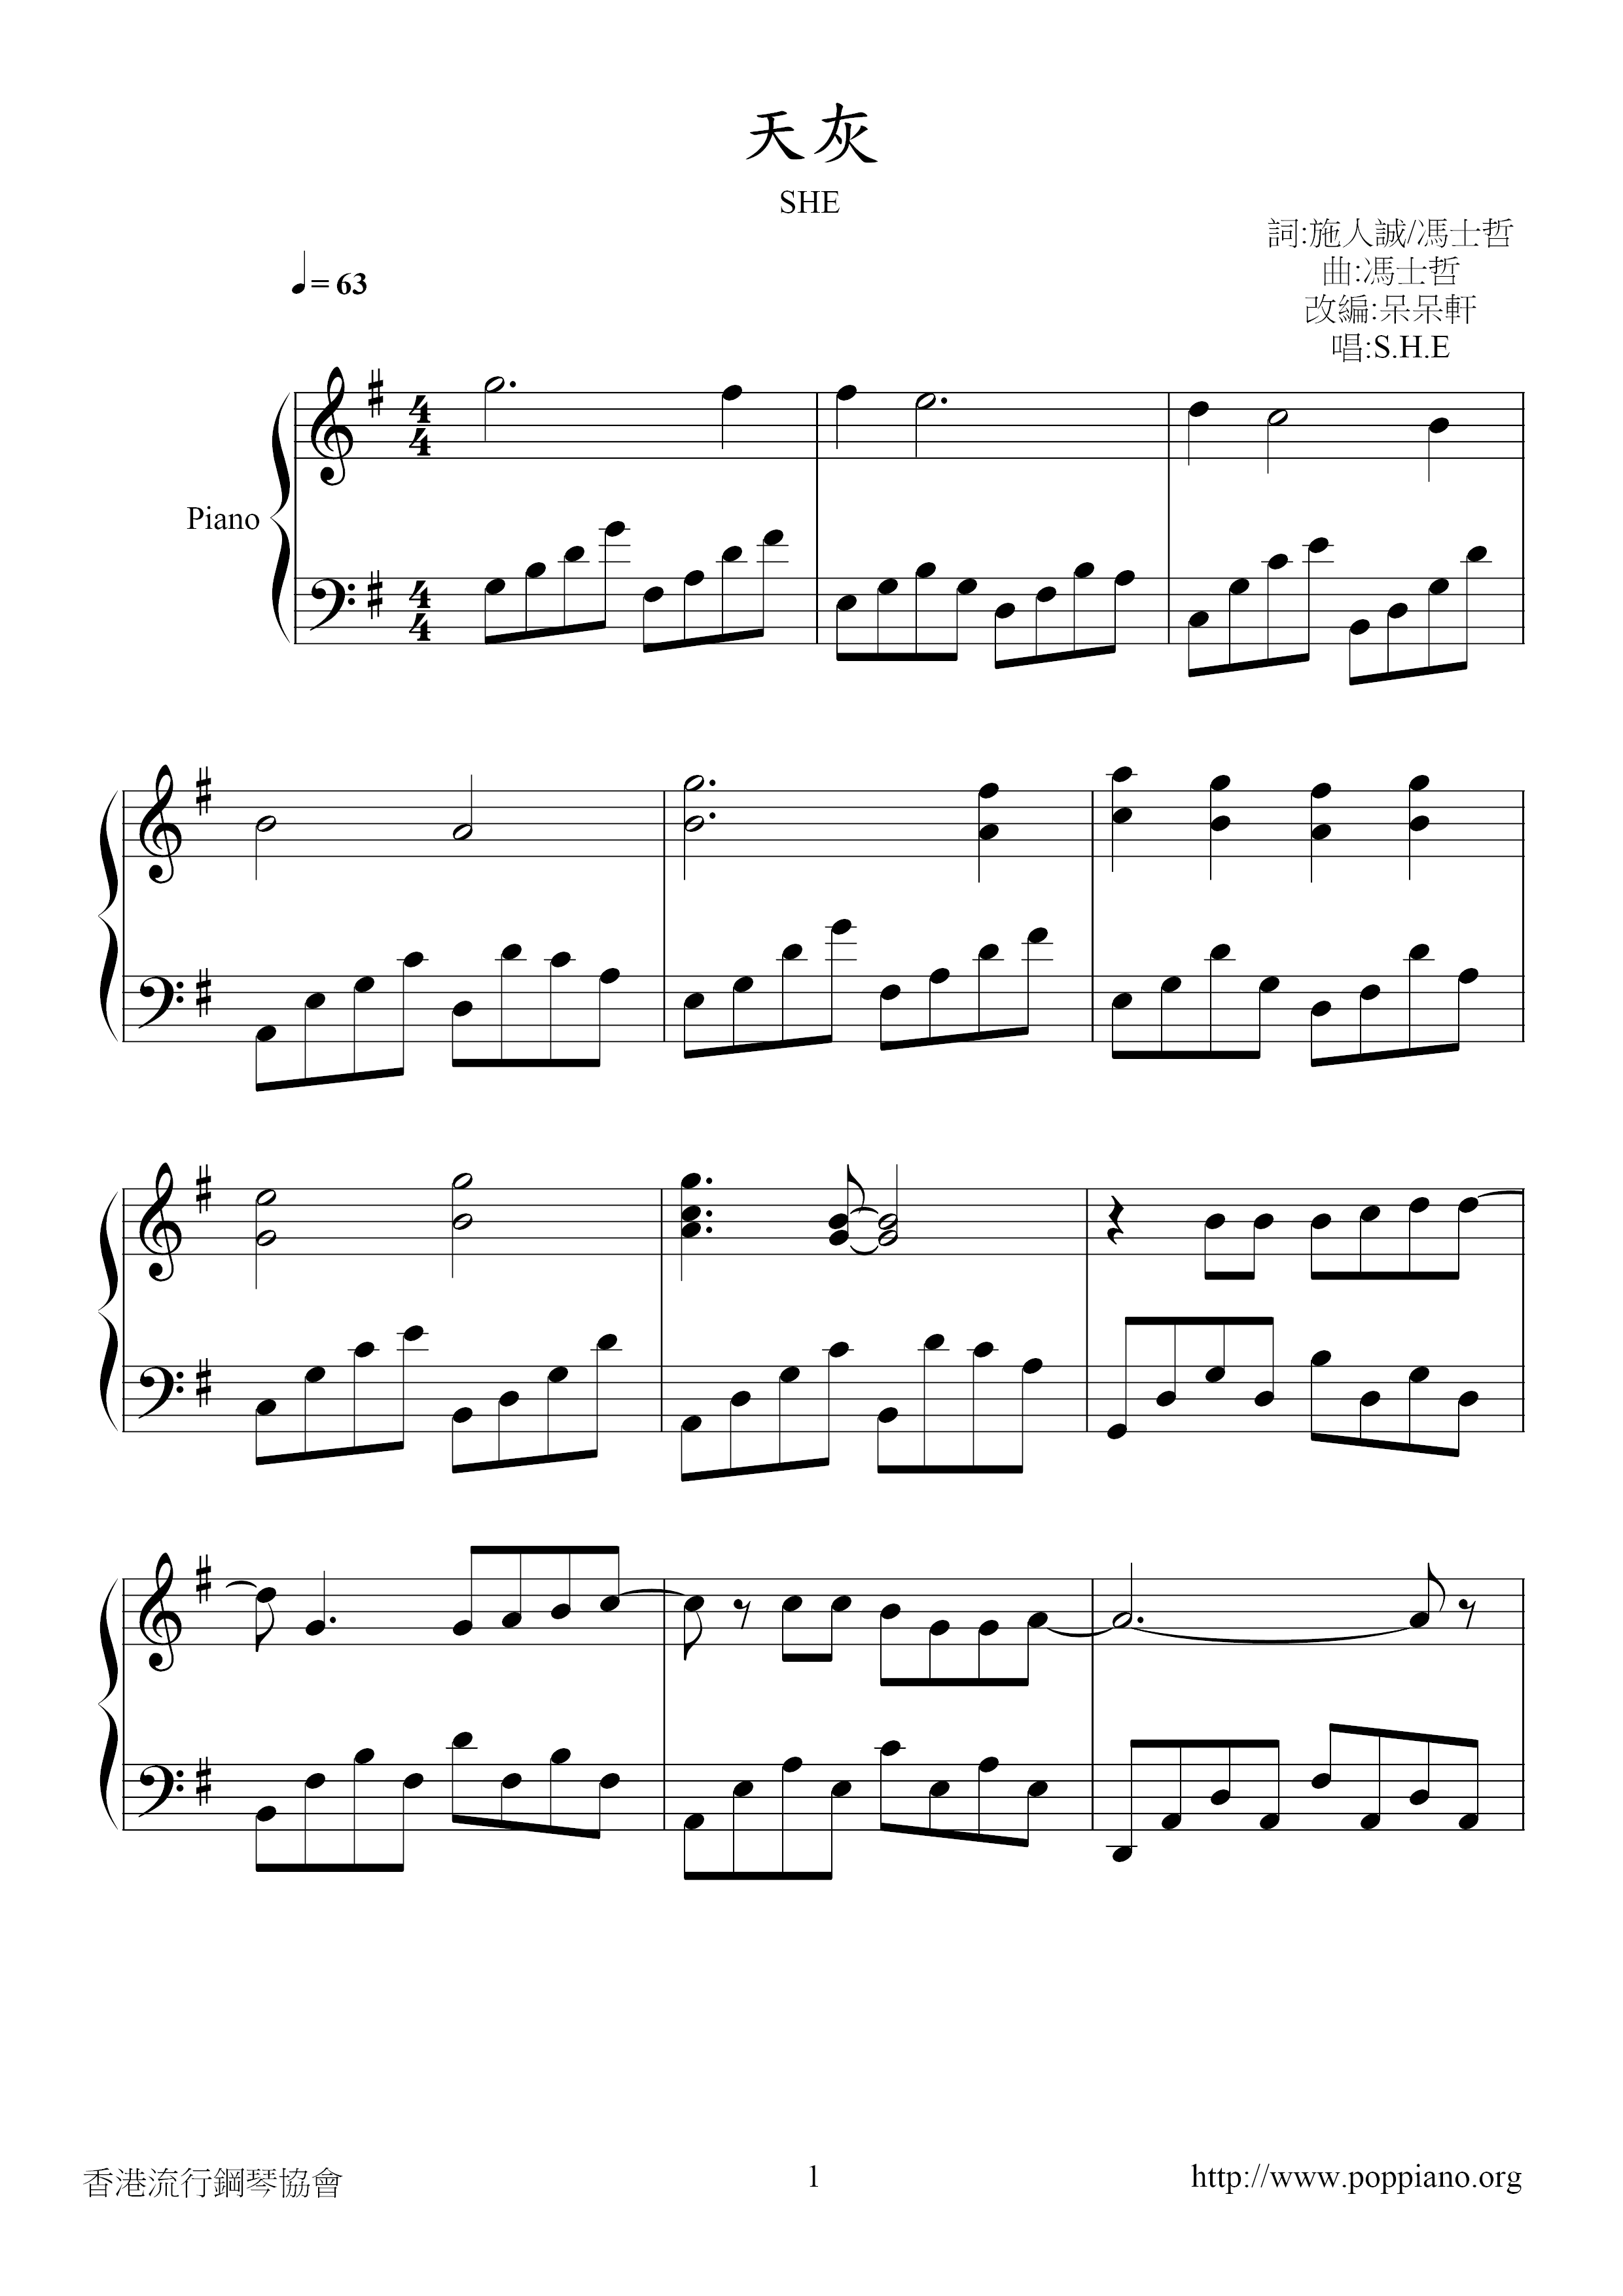 Tianhui Score